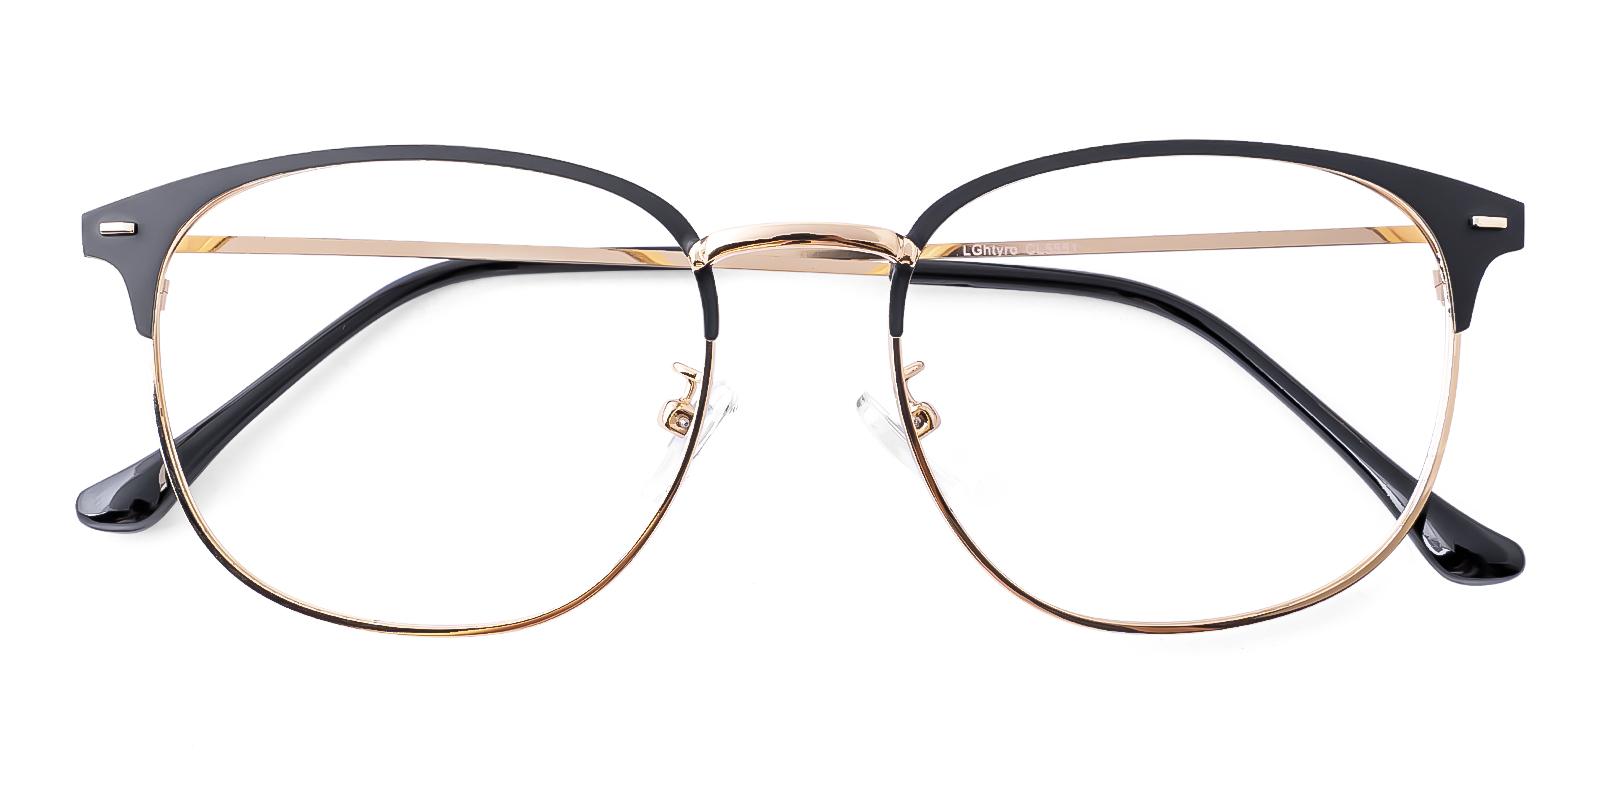 Plensure Gold Metal Eyeglasses , NosePads Frames from ABBE Glasses